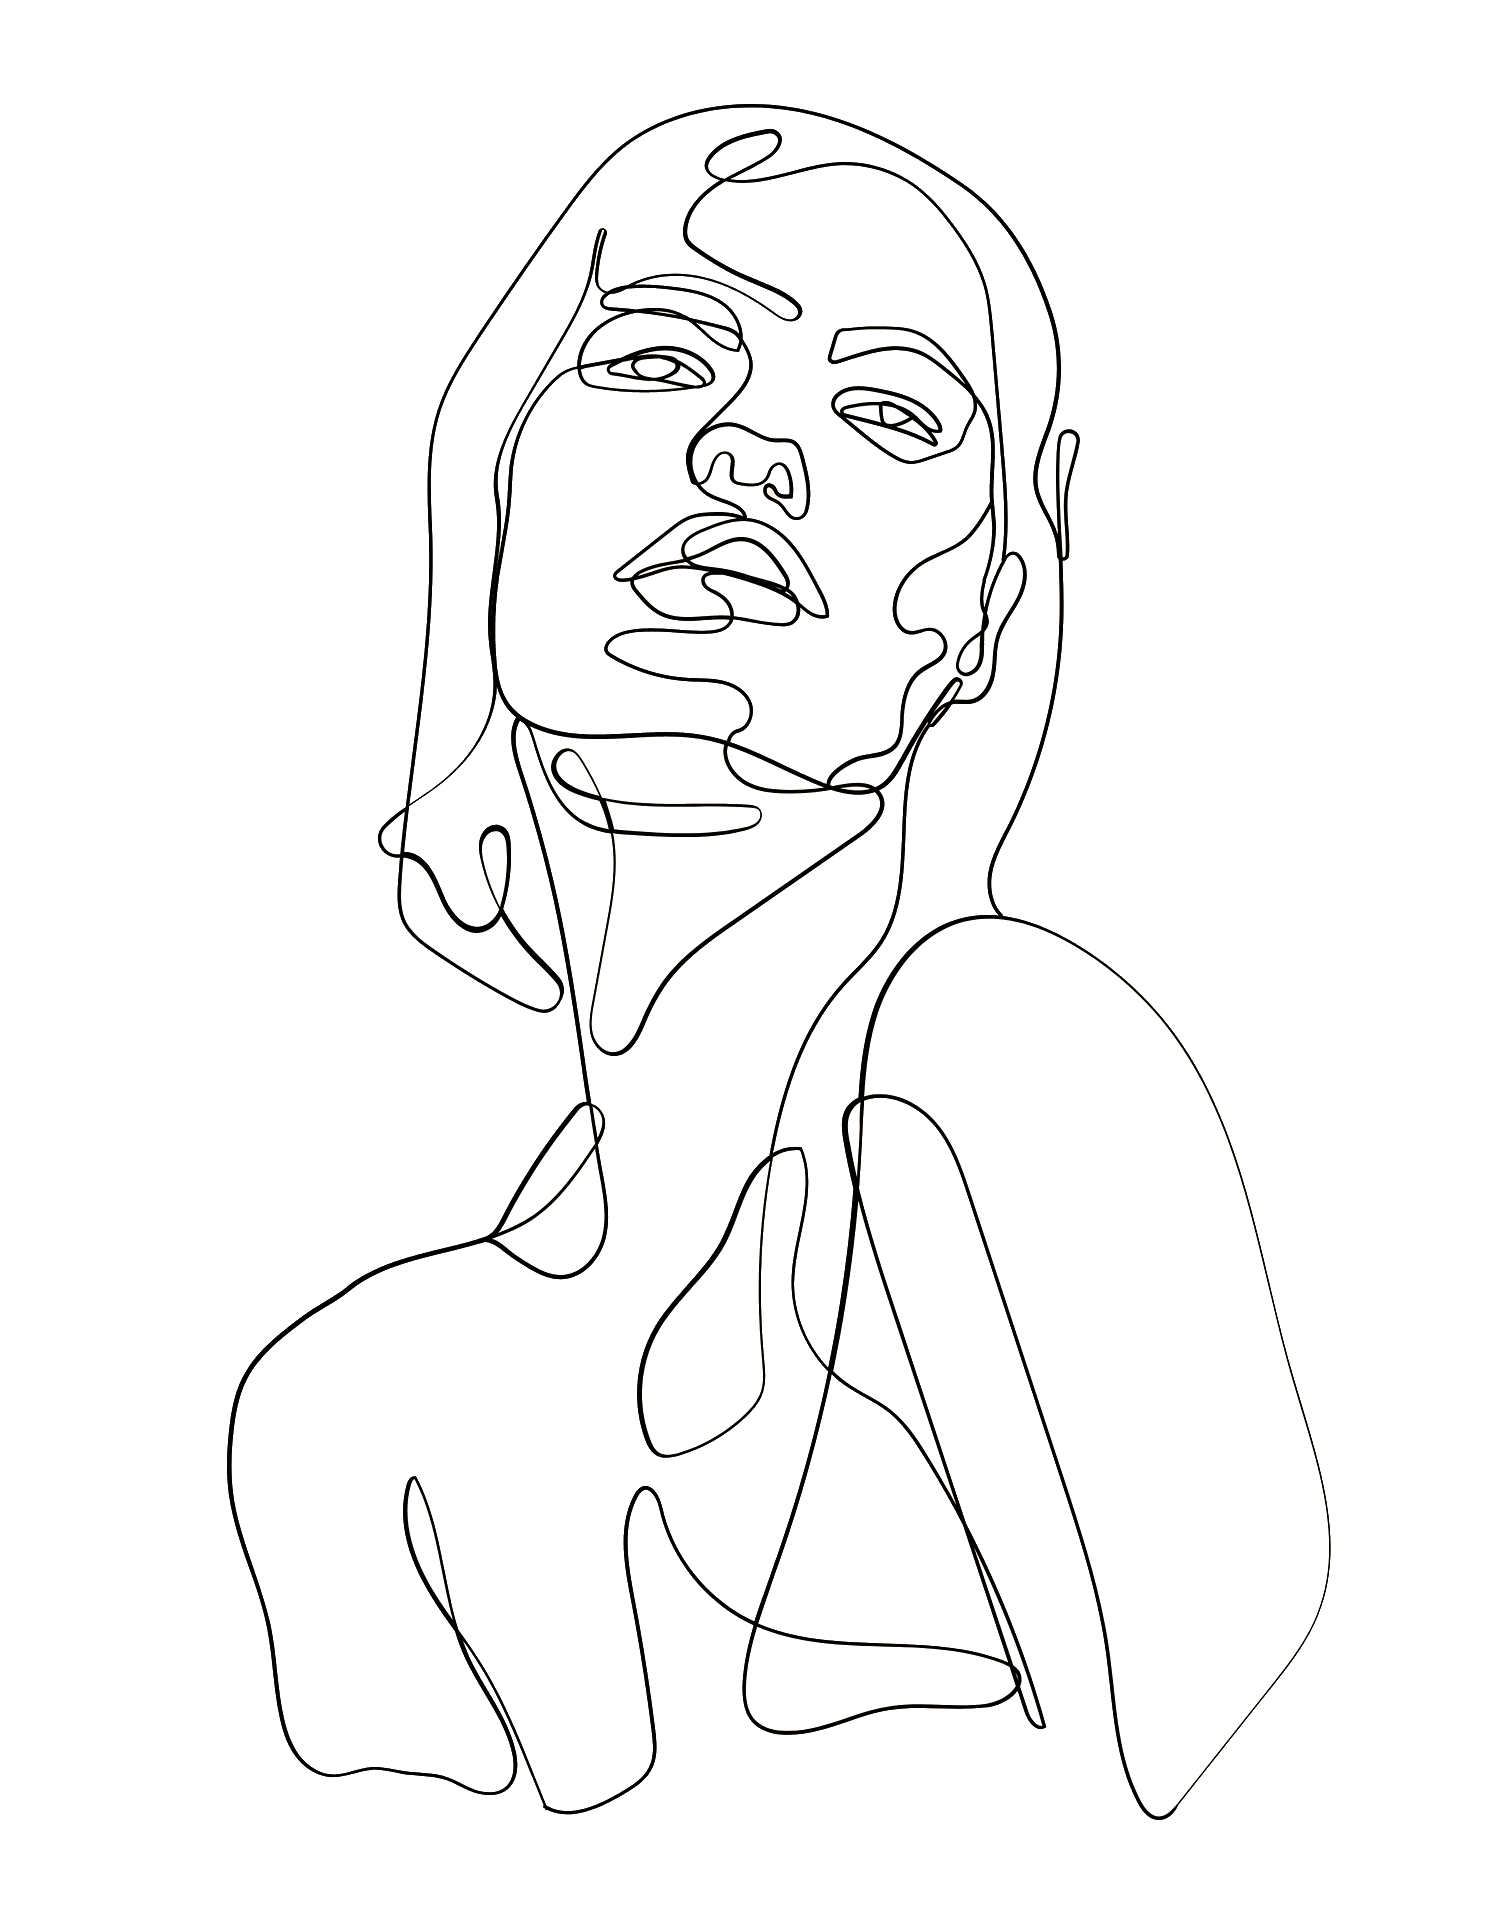 Boceto de una mujer dibujada en lineas